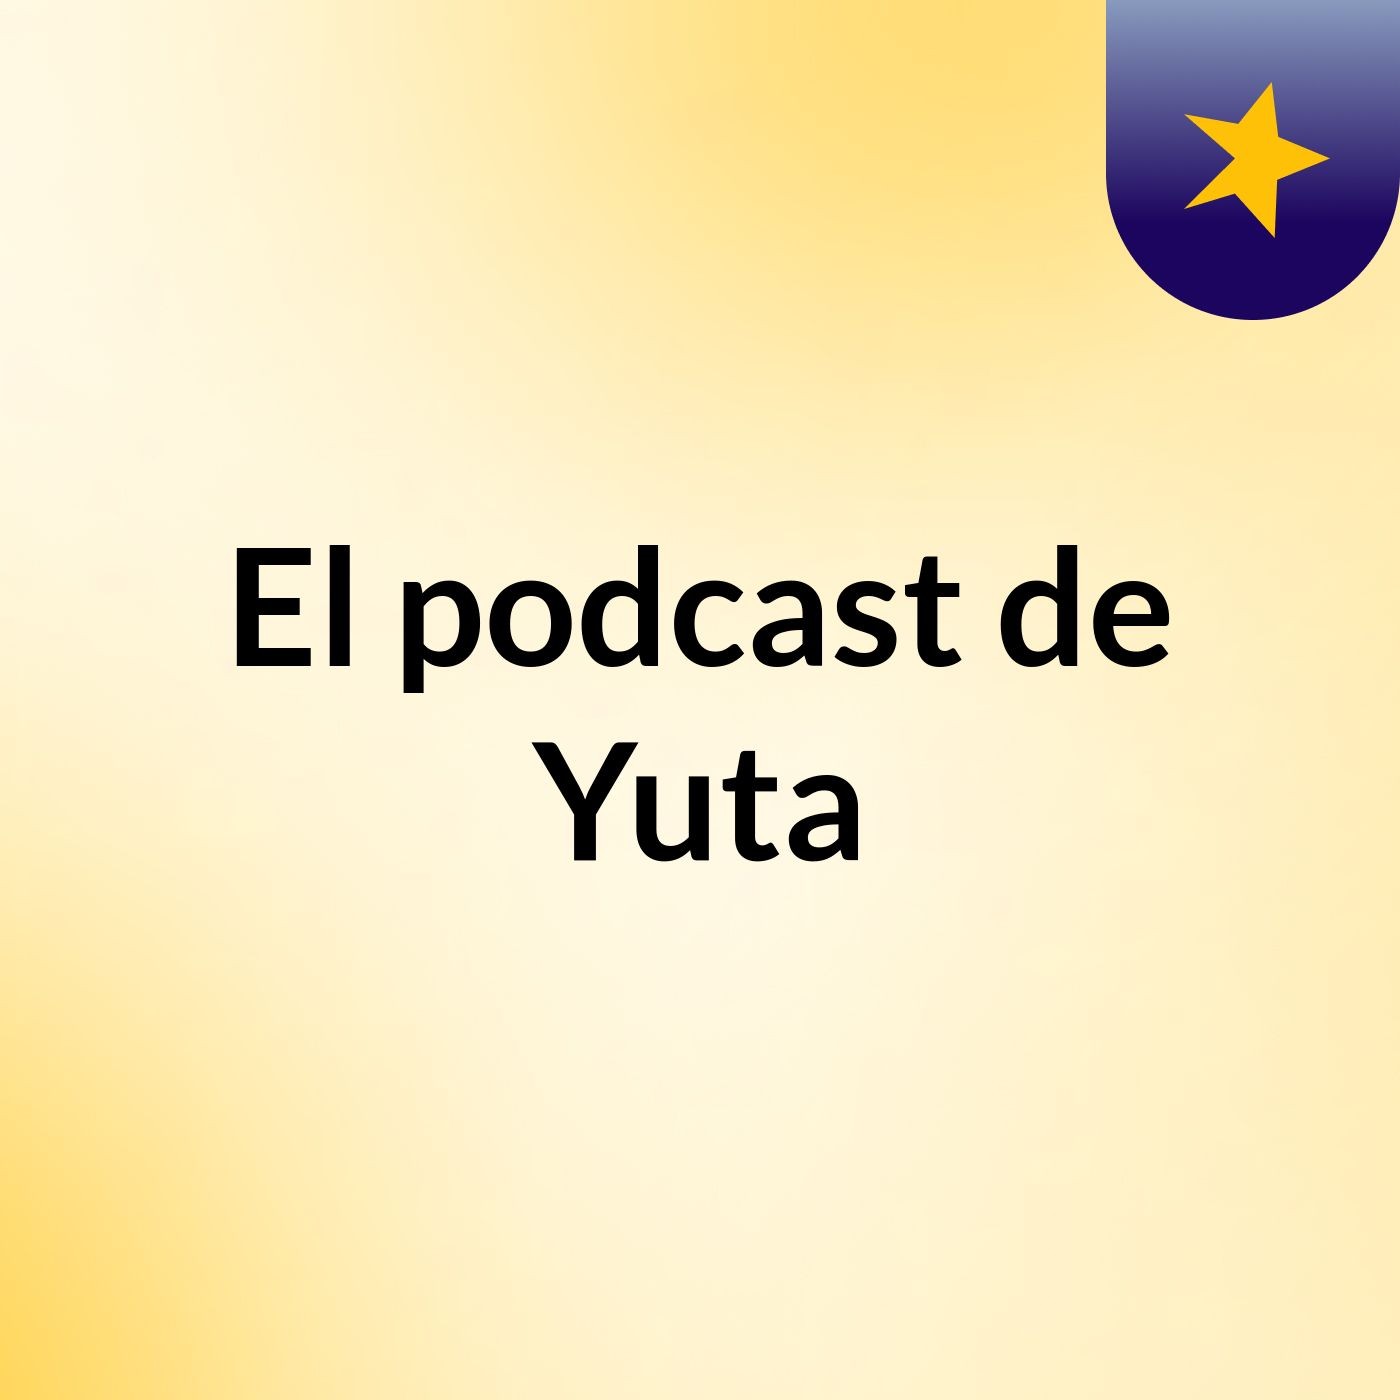 El podcast de Yuta